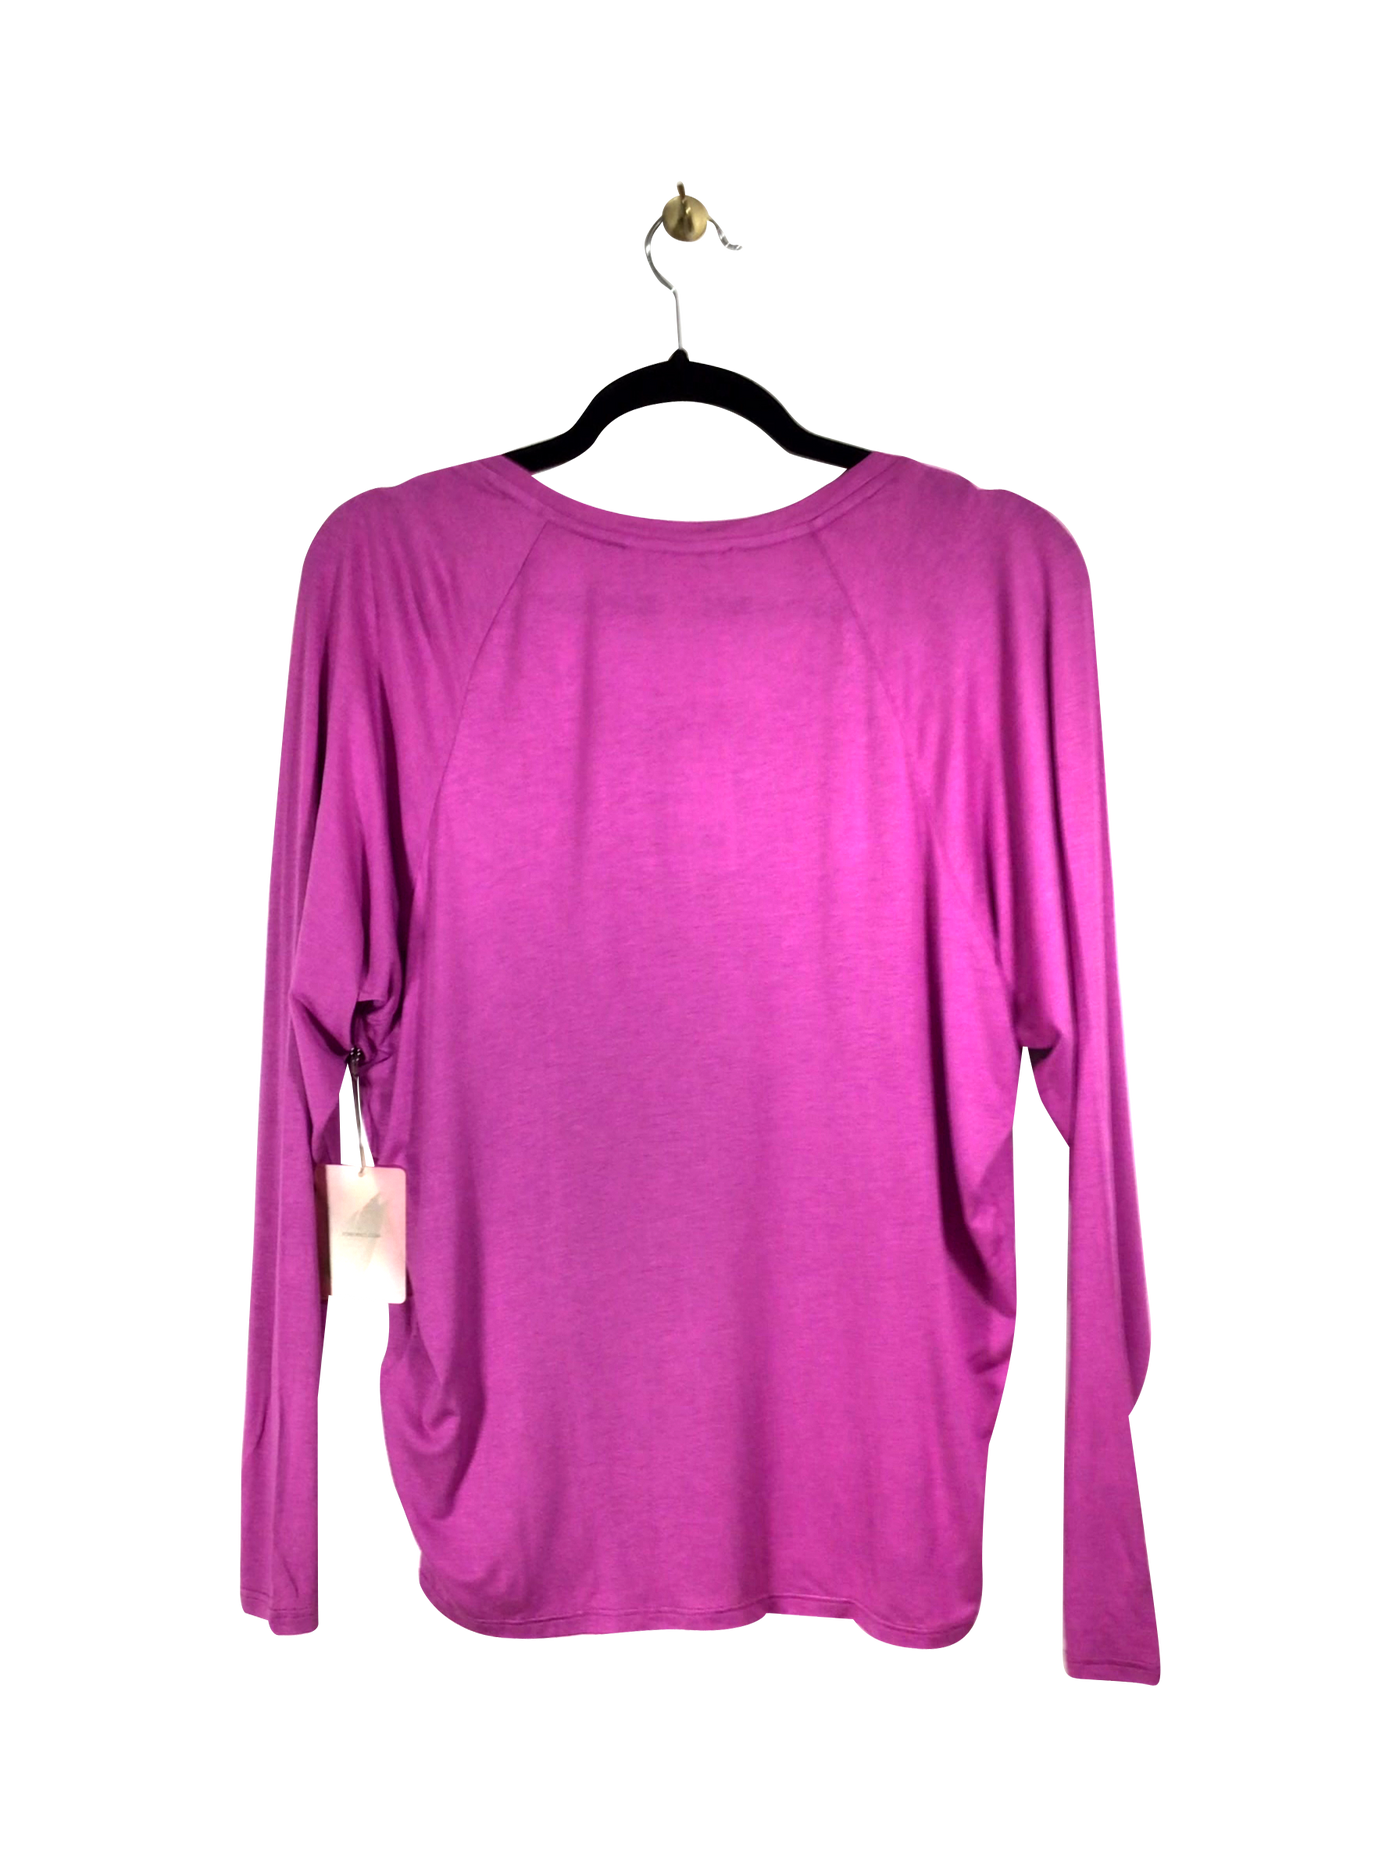 FOREVER 21 Regular fit T-shirt in Pink - Size S | 7.8 $ KOOP